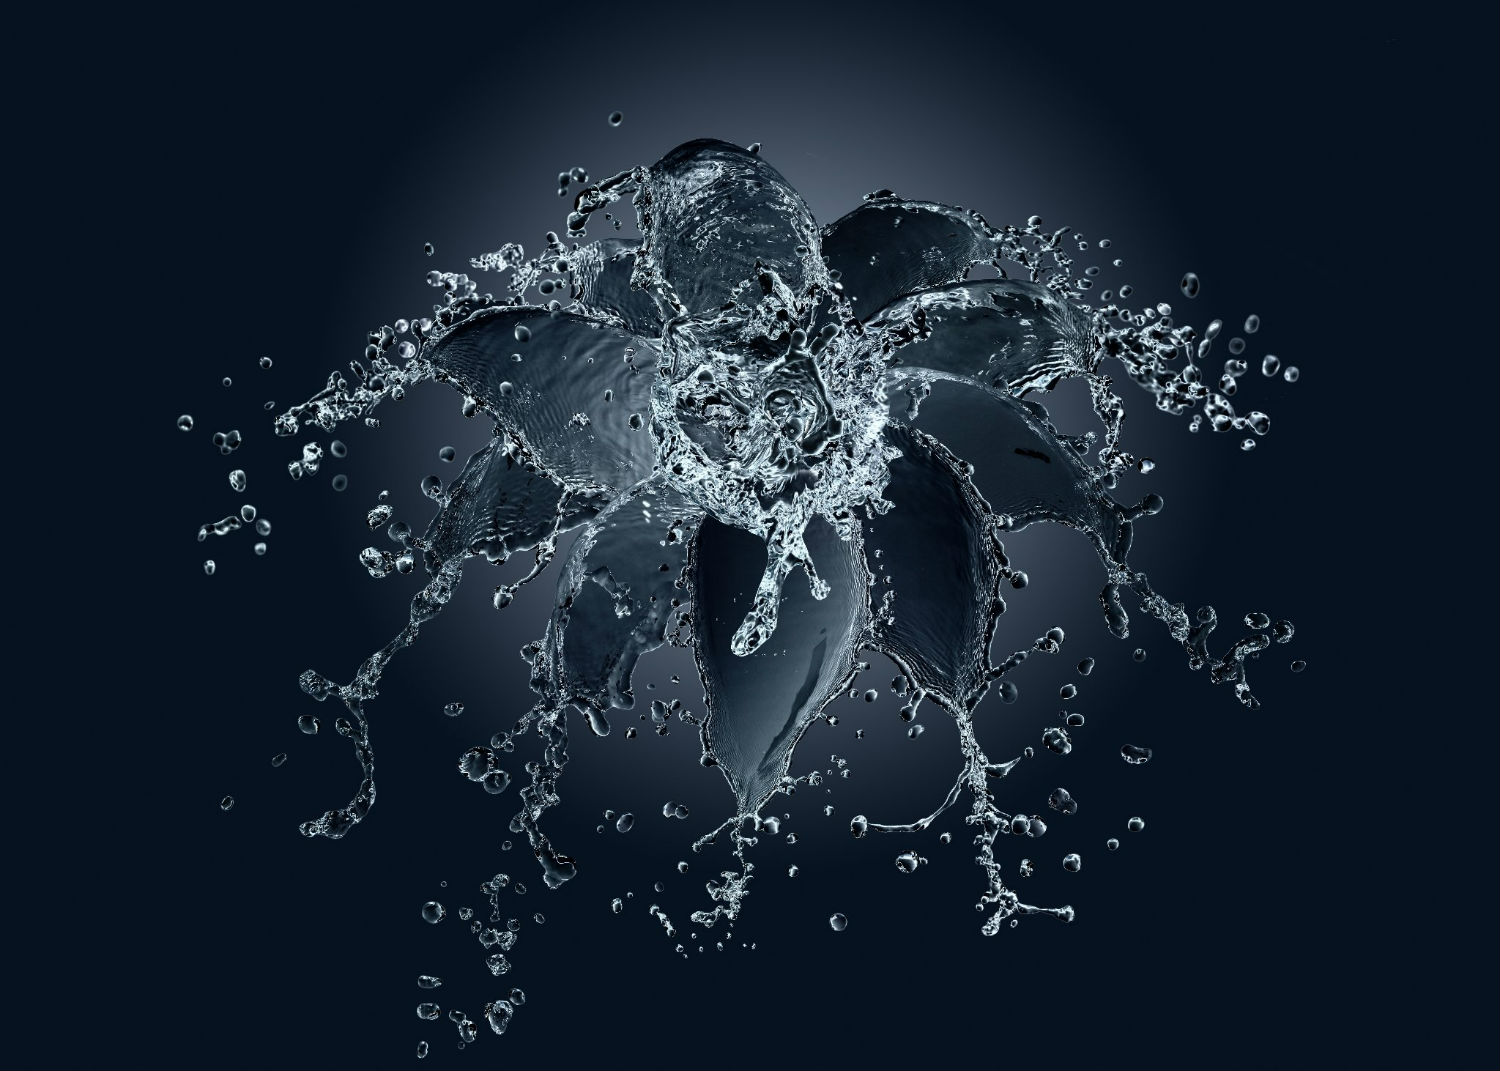 alex koloskov splash water photography black flower